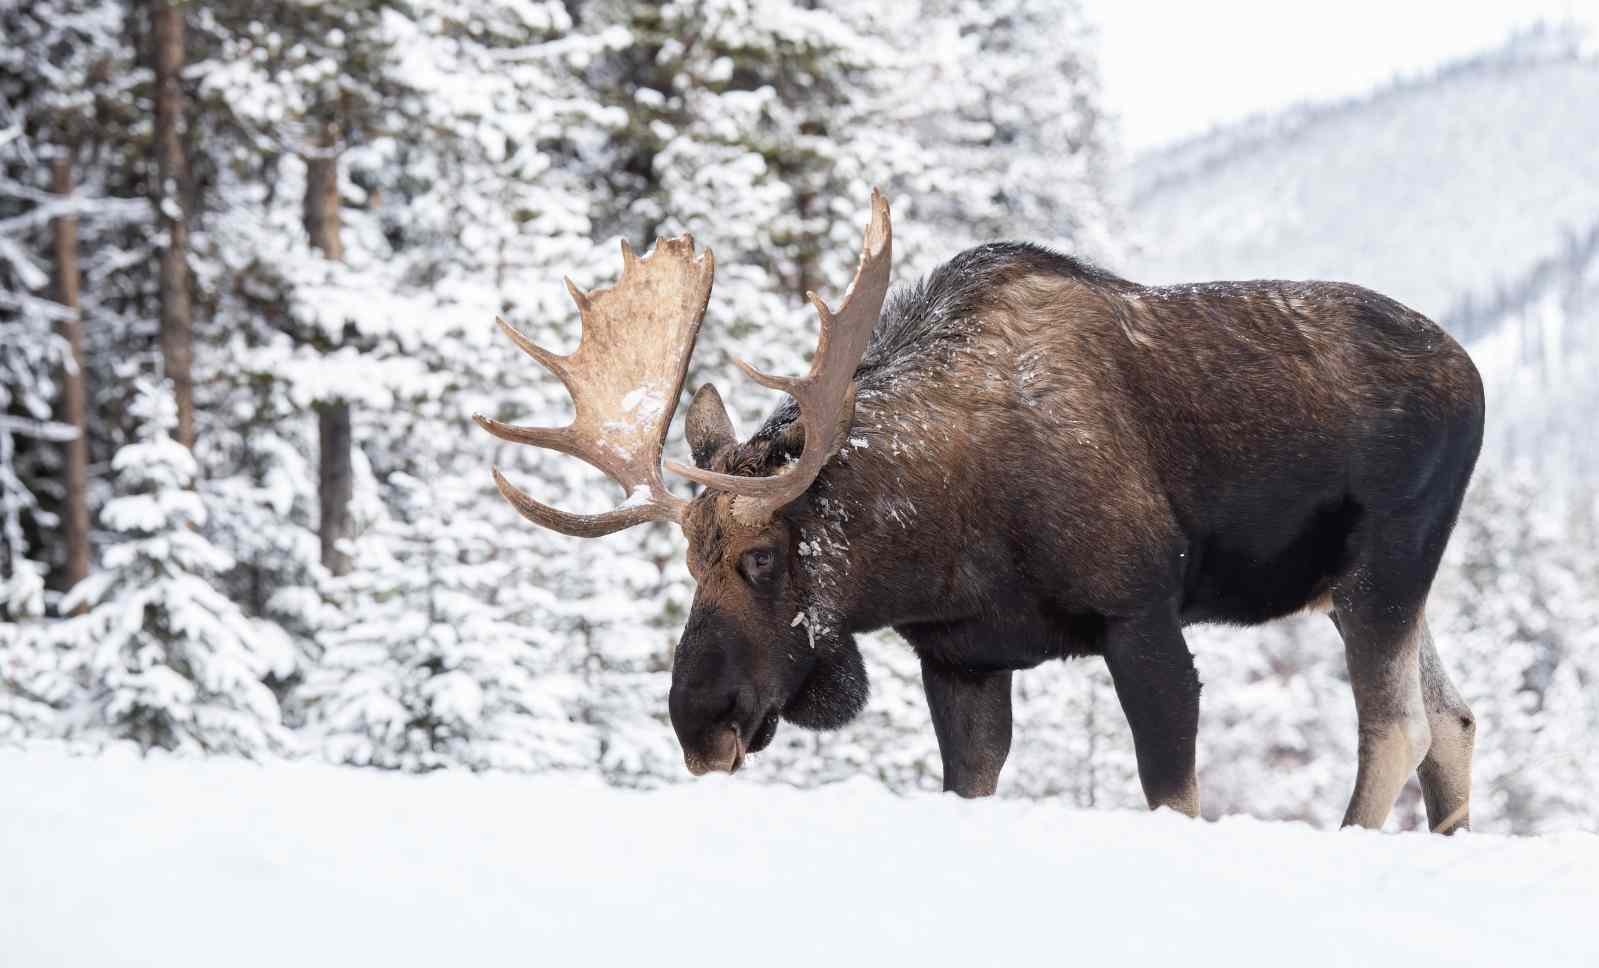 How big do Moose get?